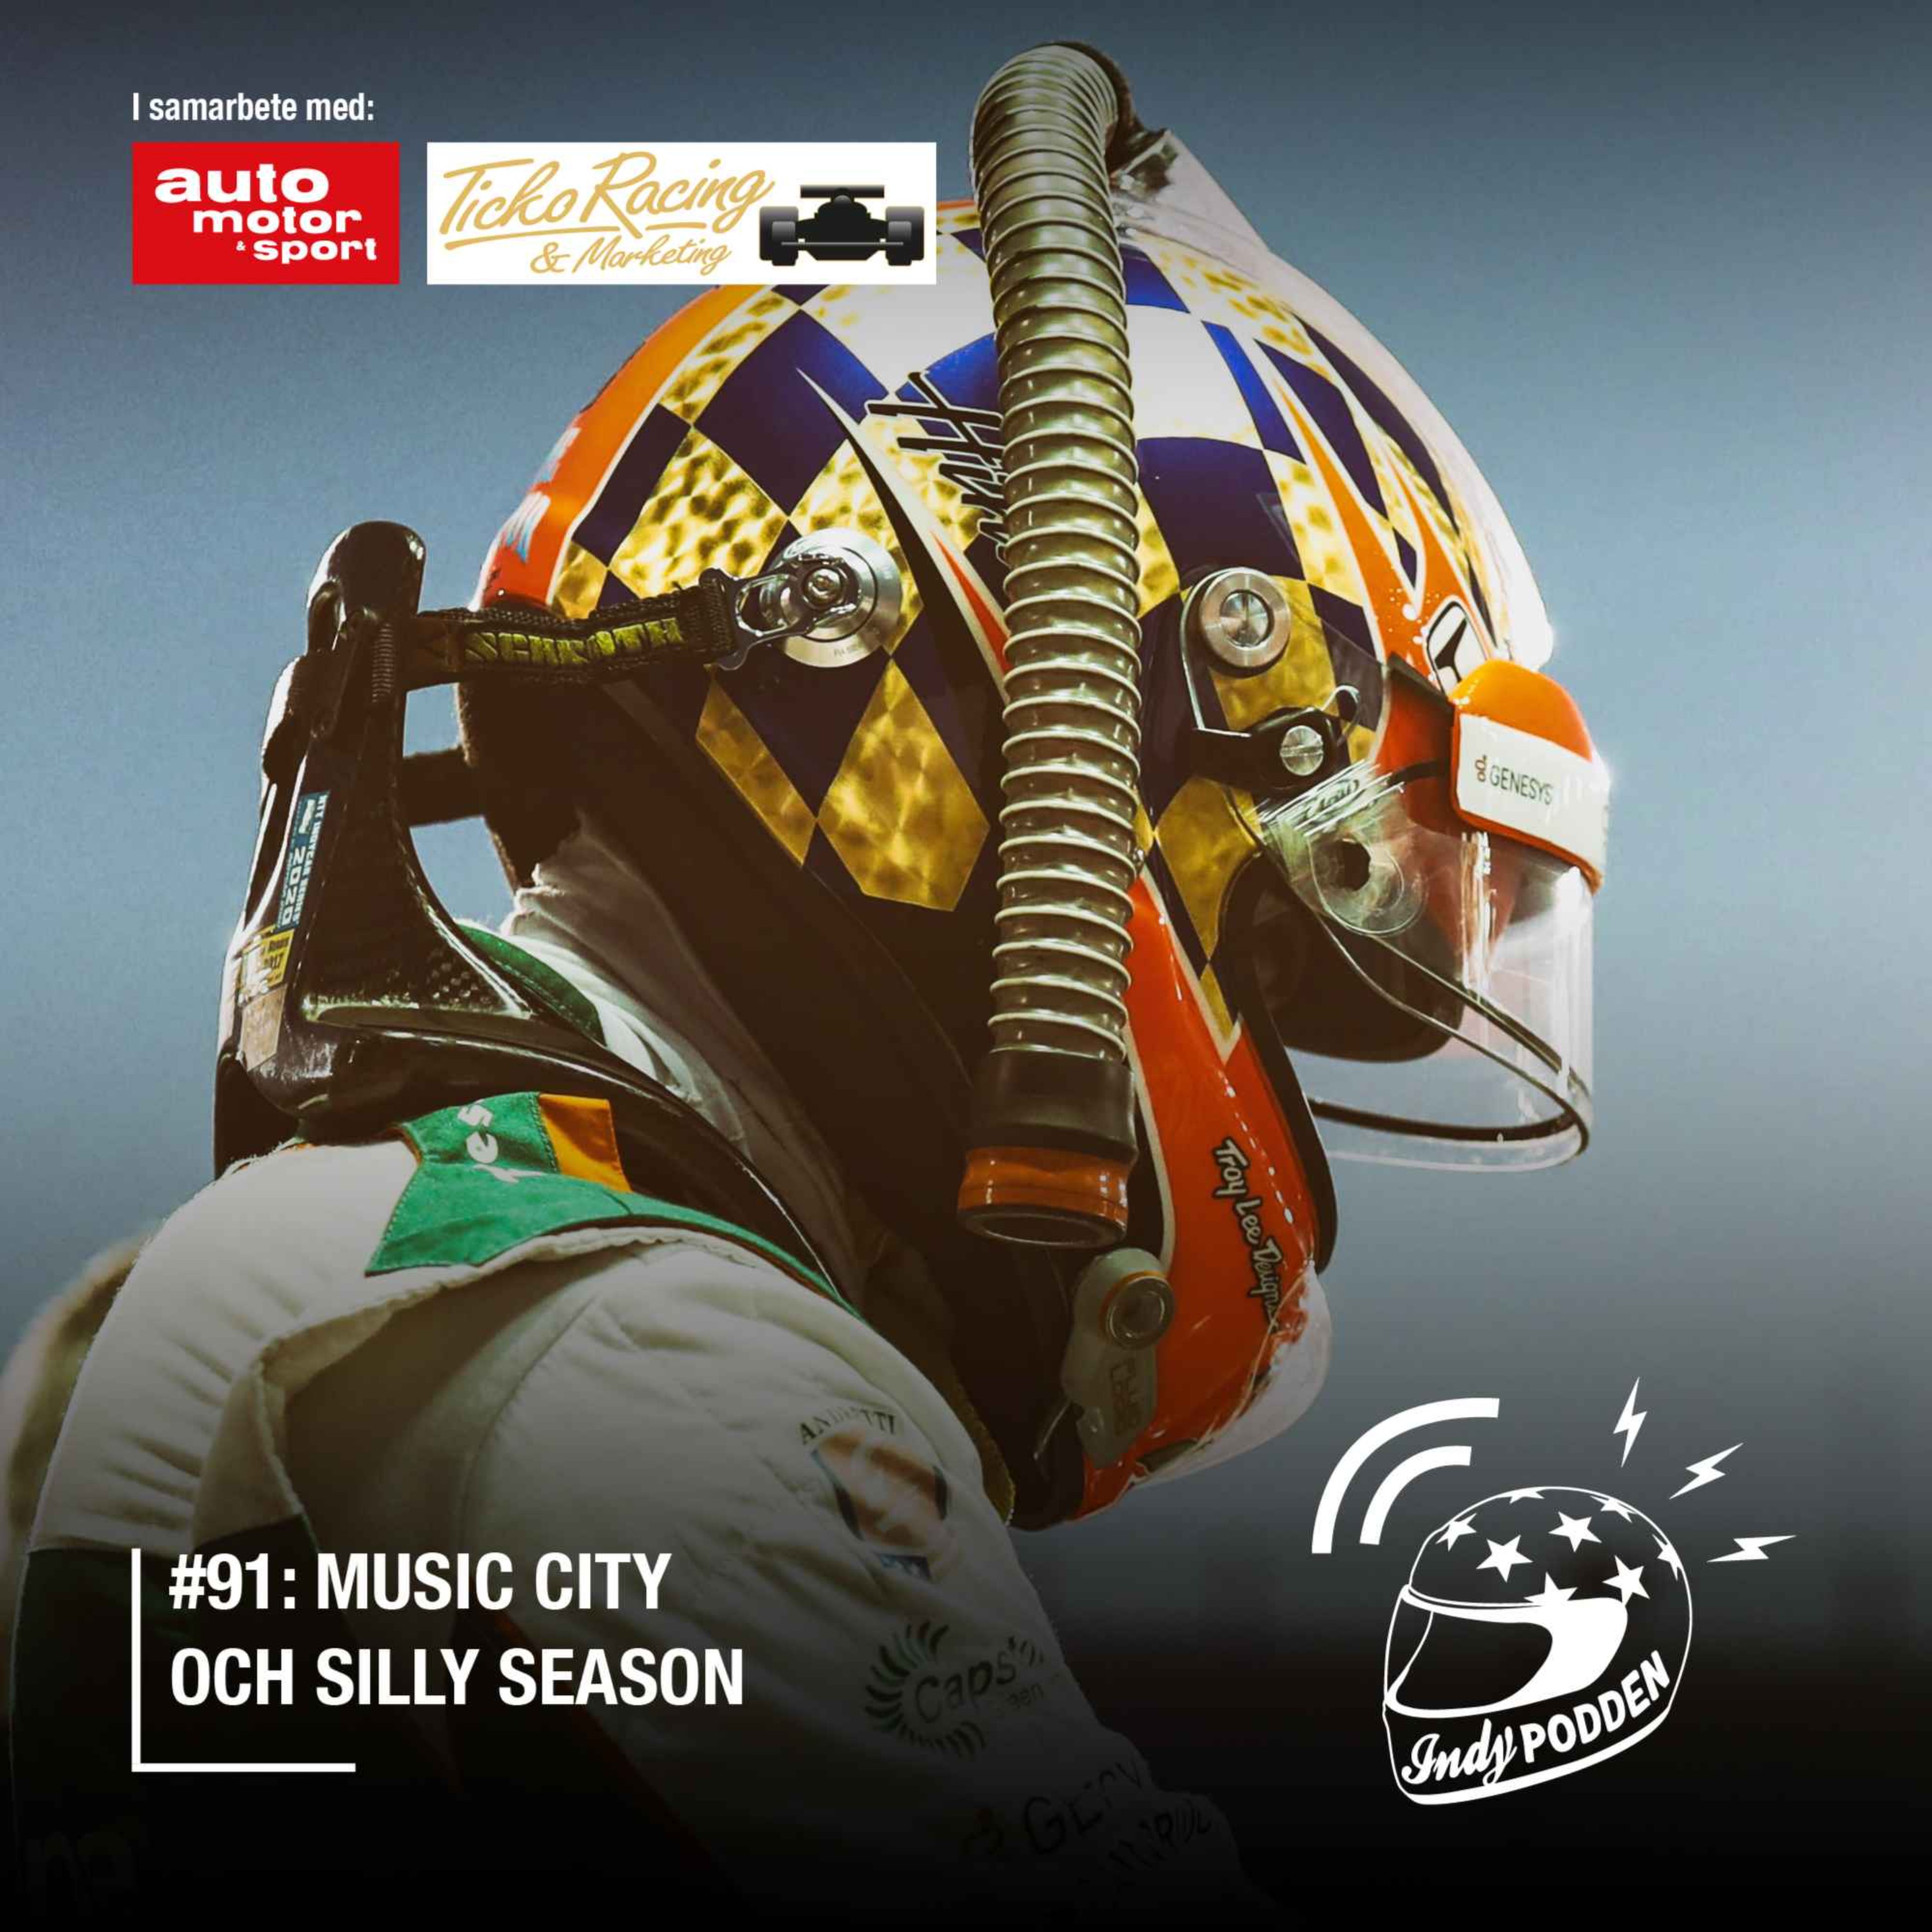 #91: Music City och silly season